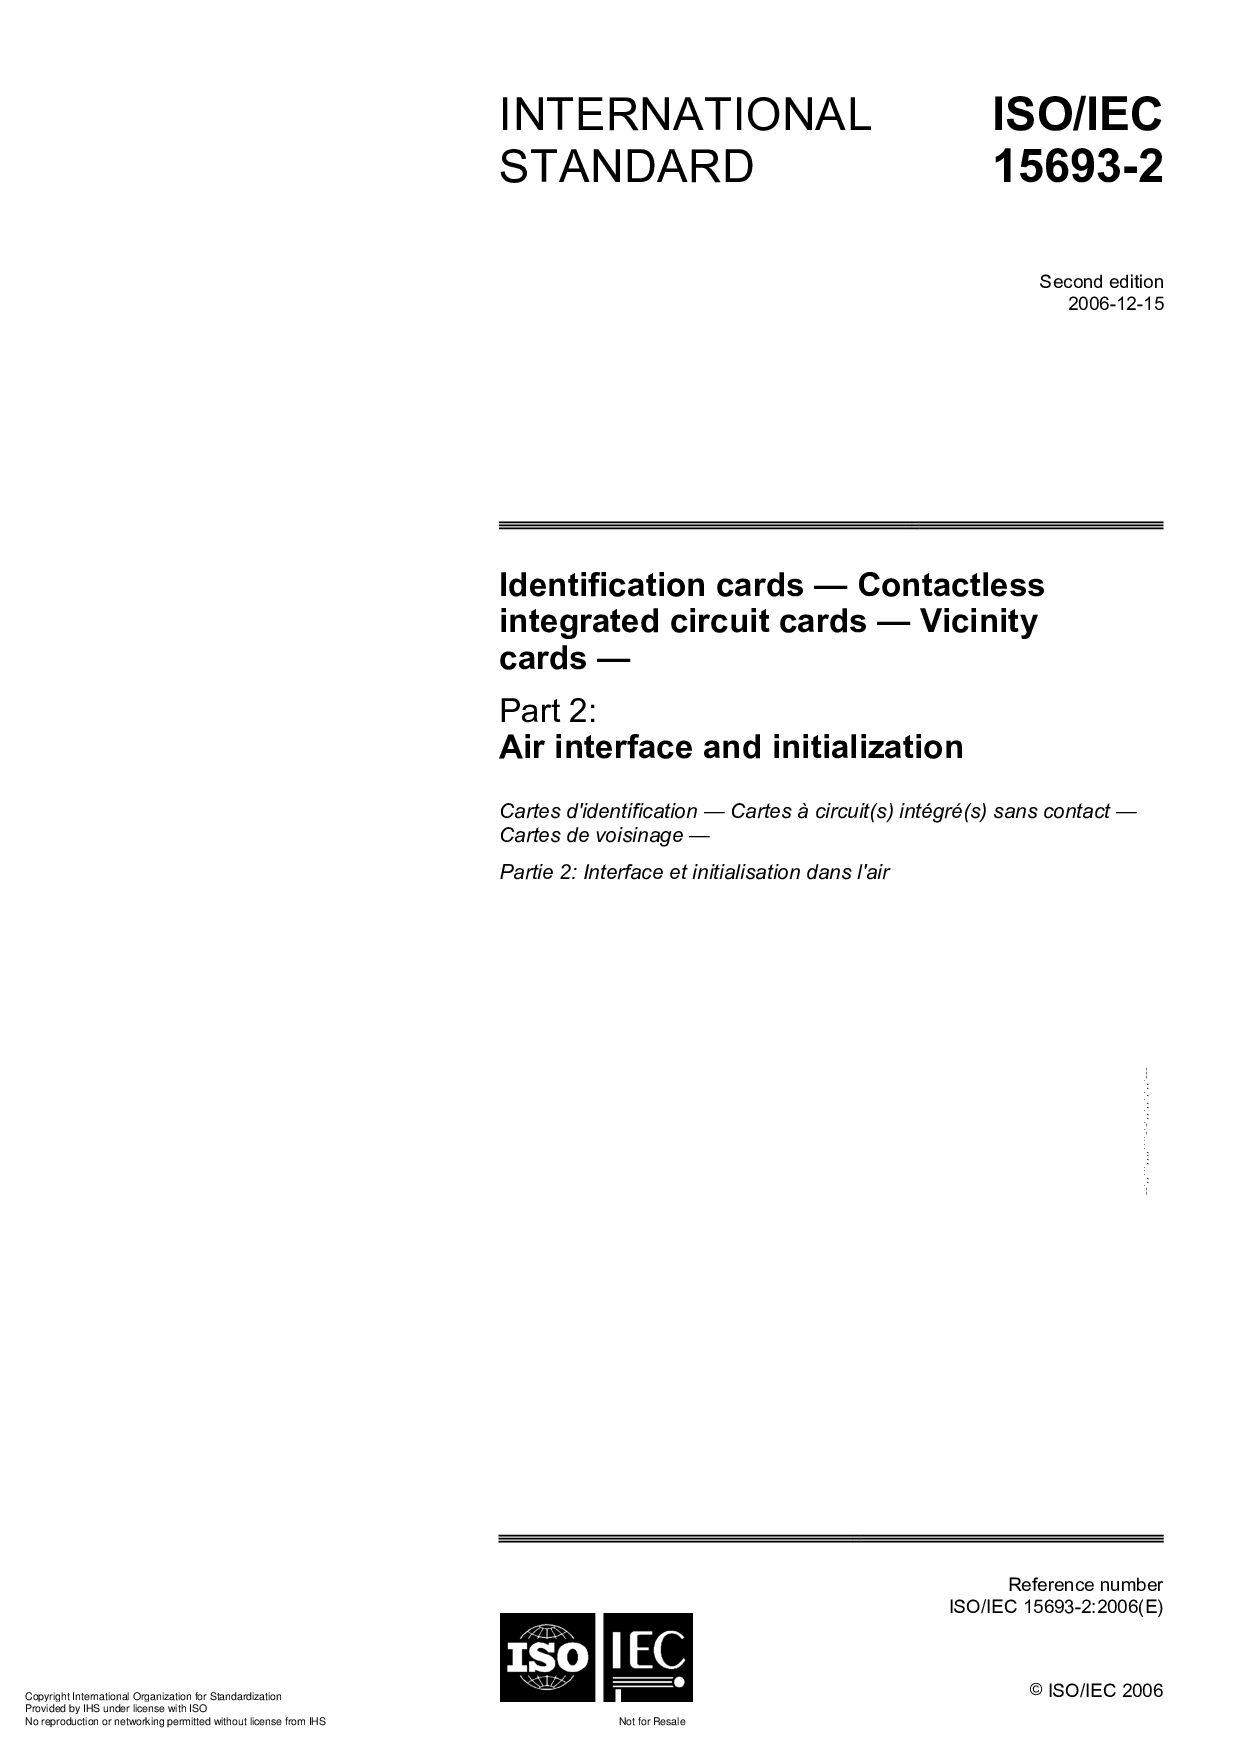 ISO/IEC 15693-2:2006封面图